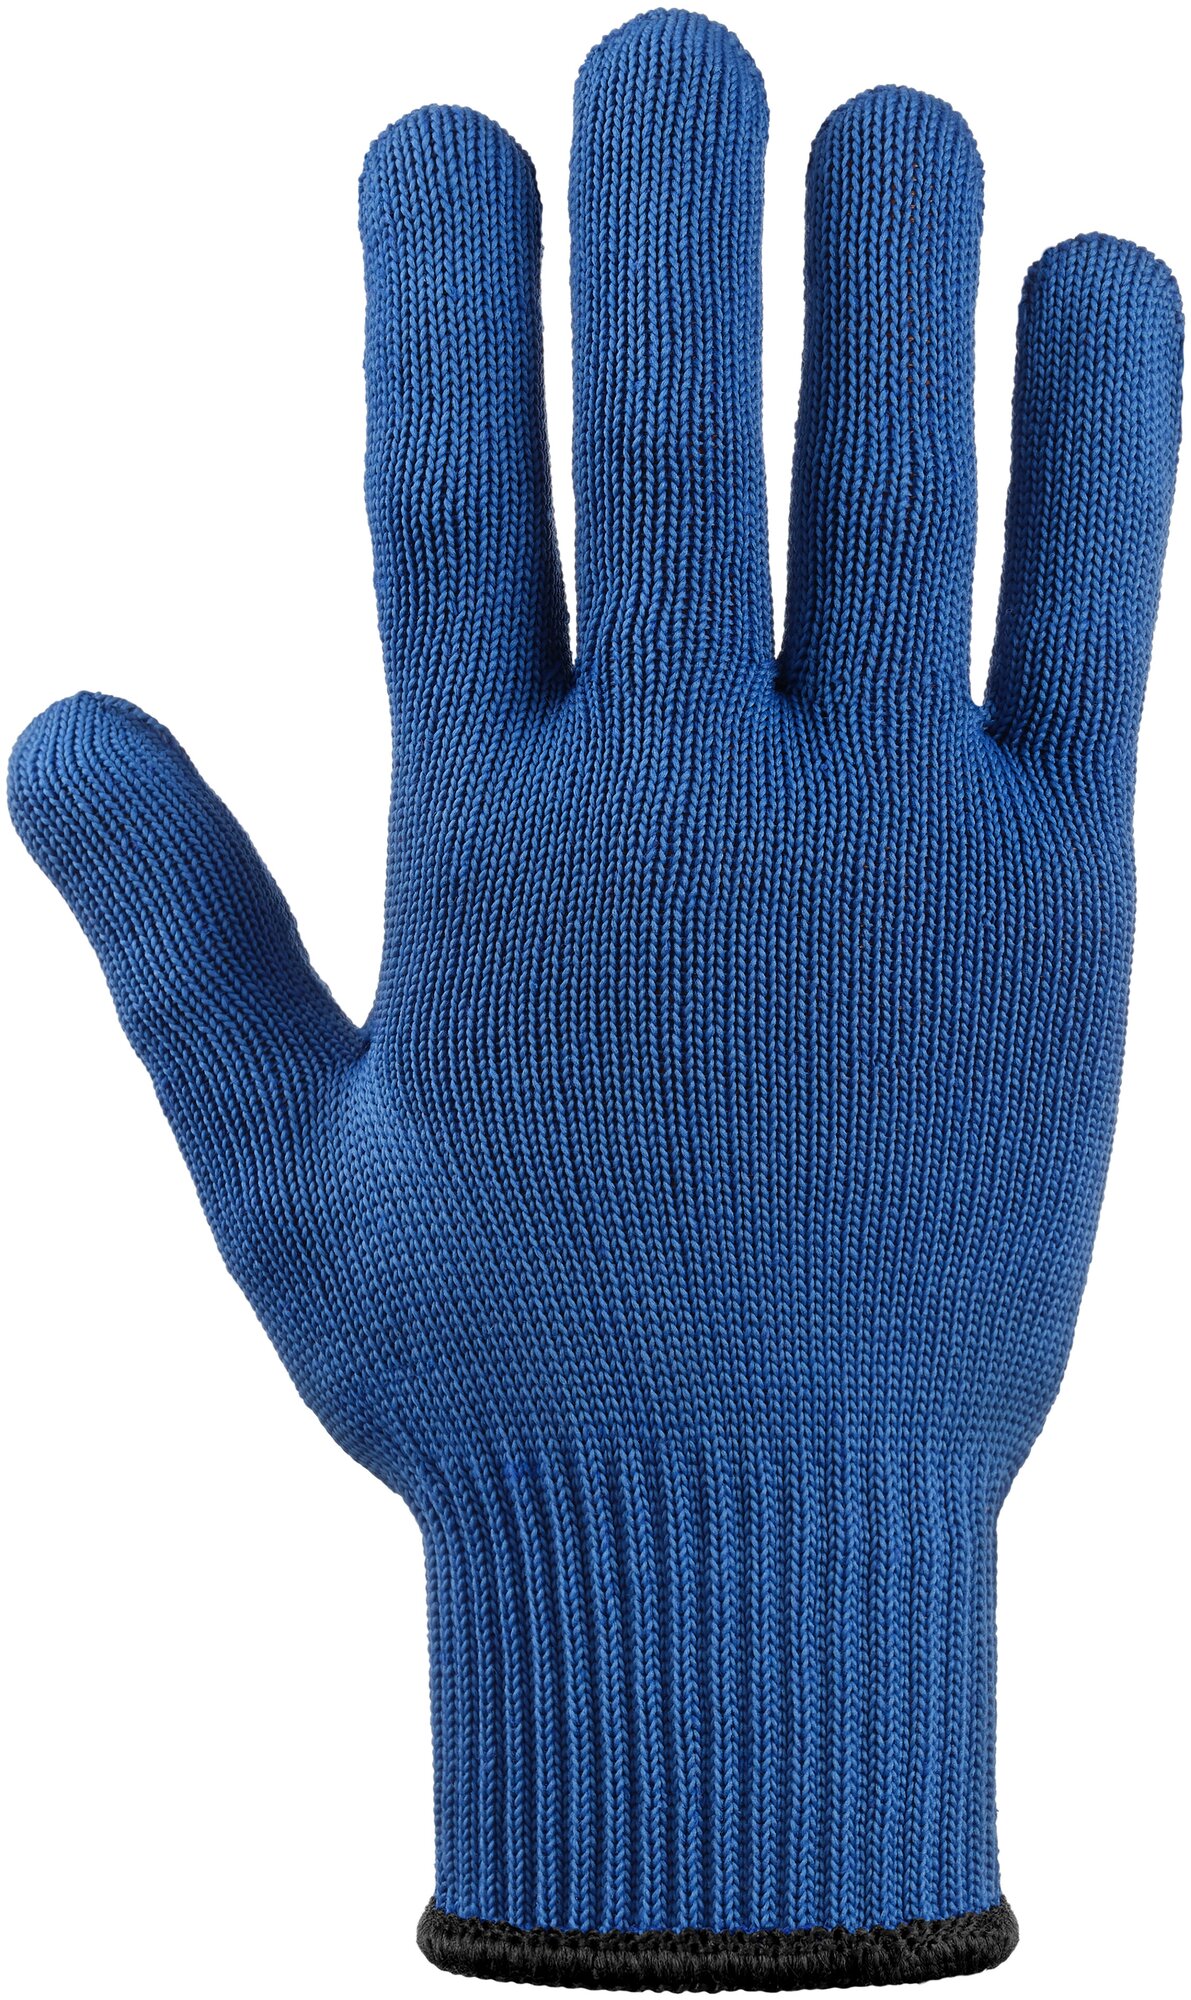 Перчатки хб 2-слойные с ПВХ 10 класс, 6 нитей, синие, L, 10 пар